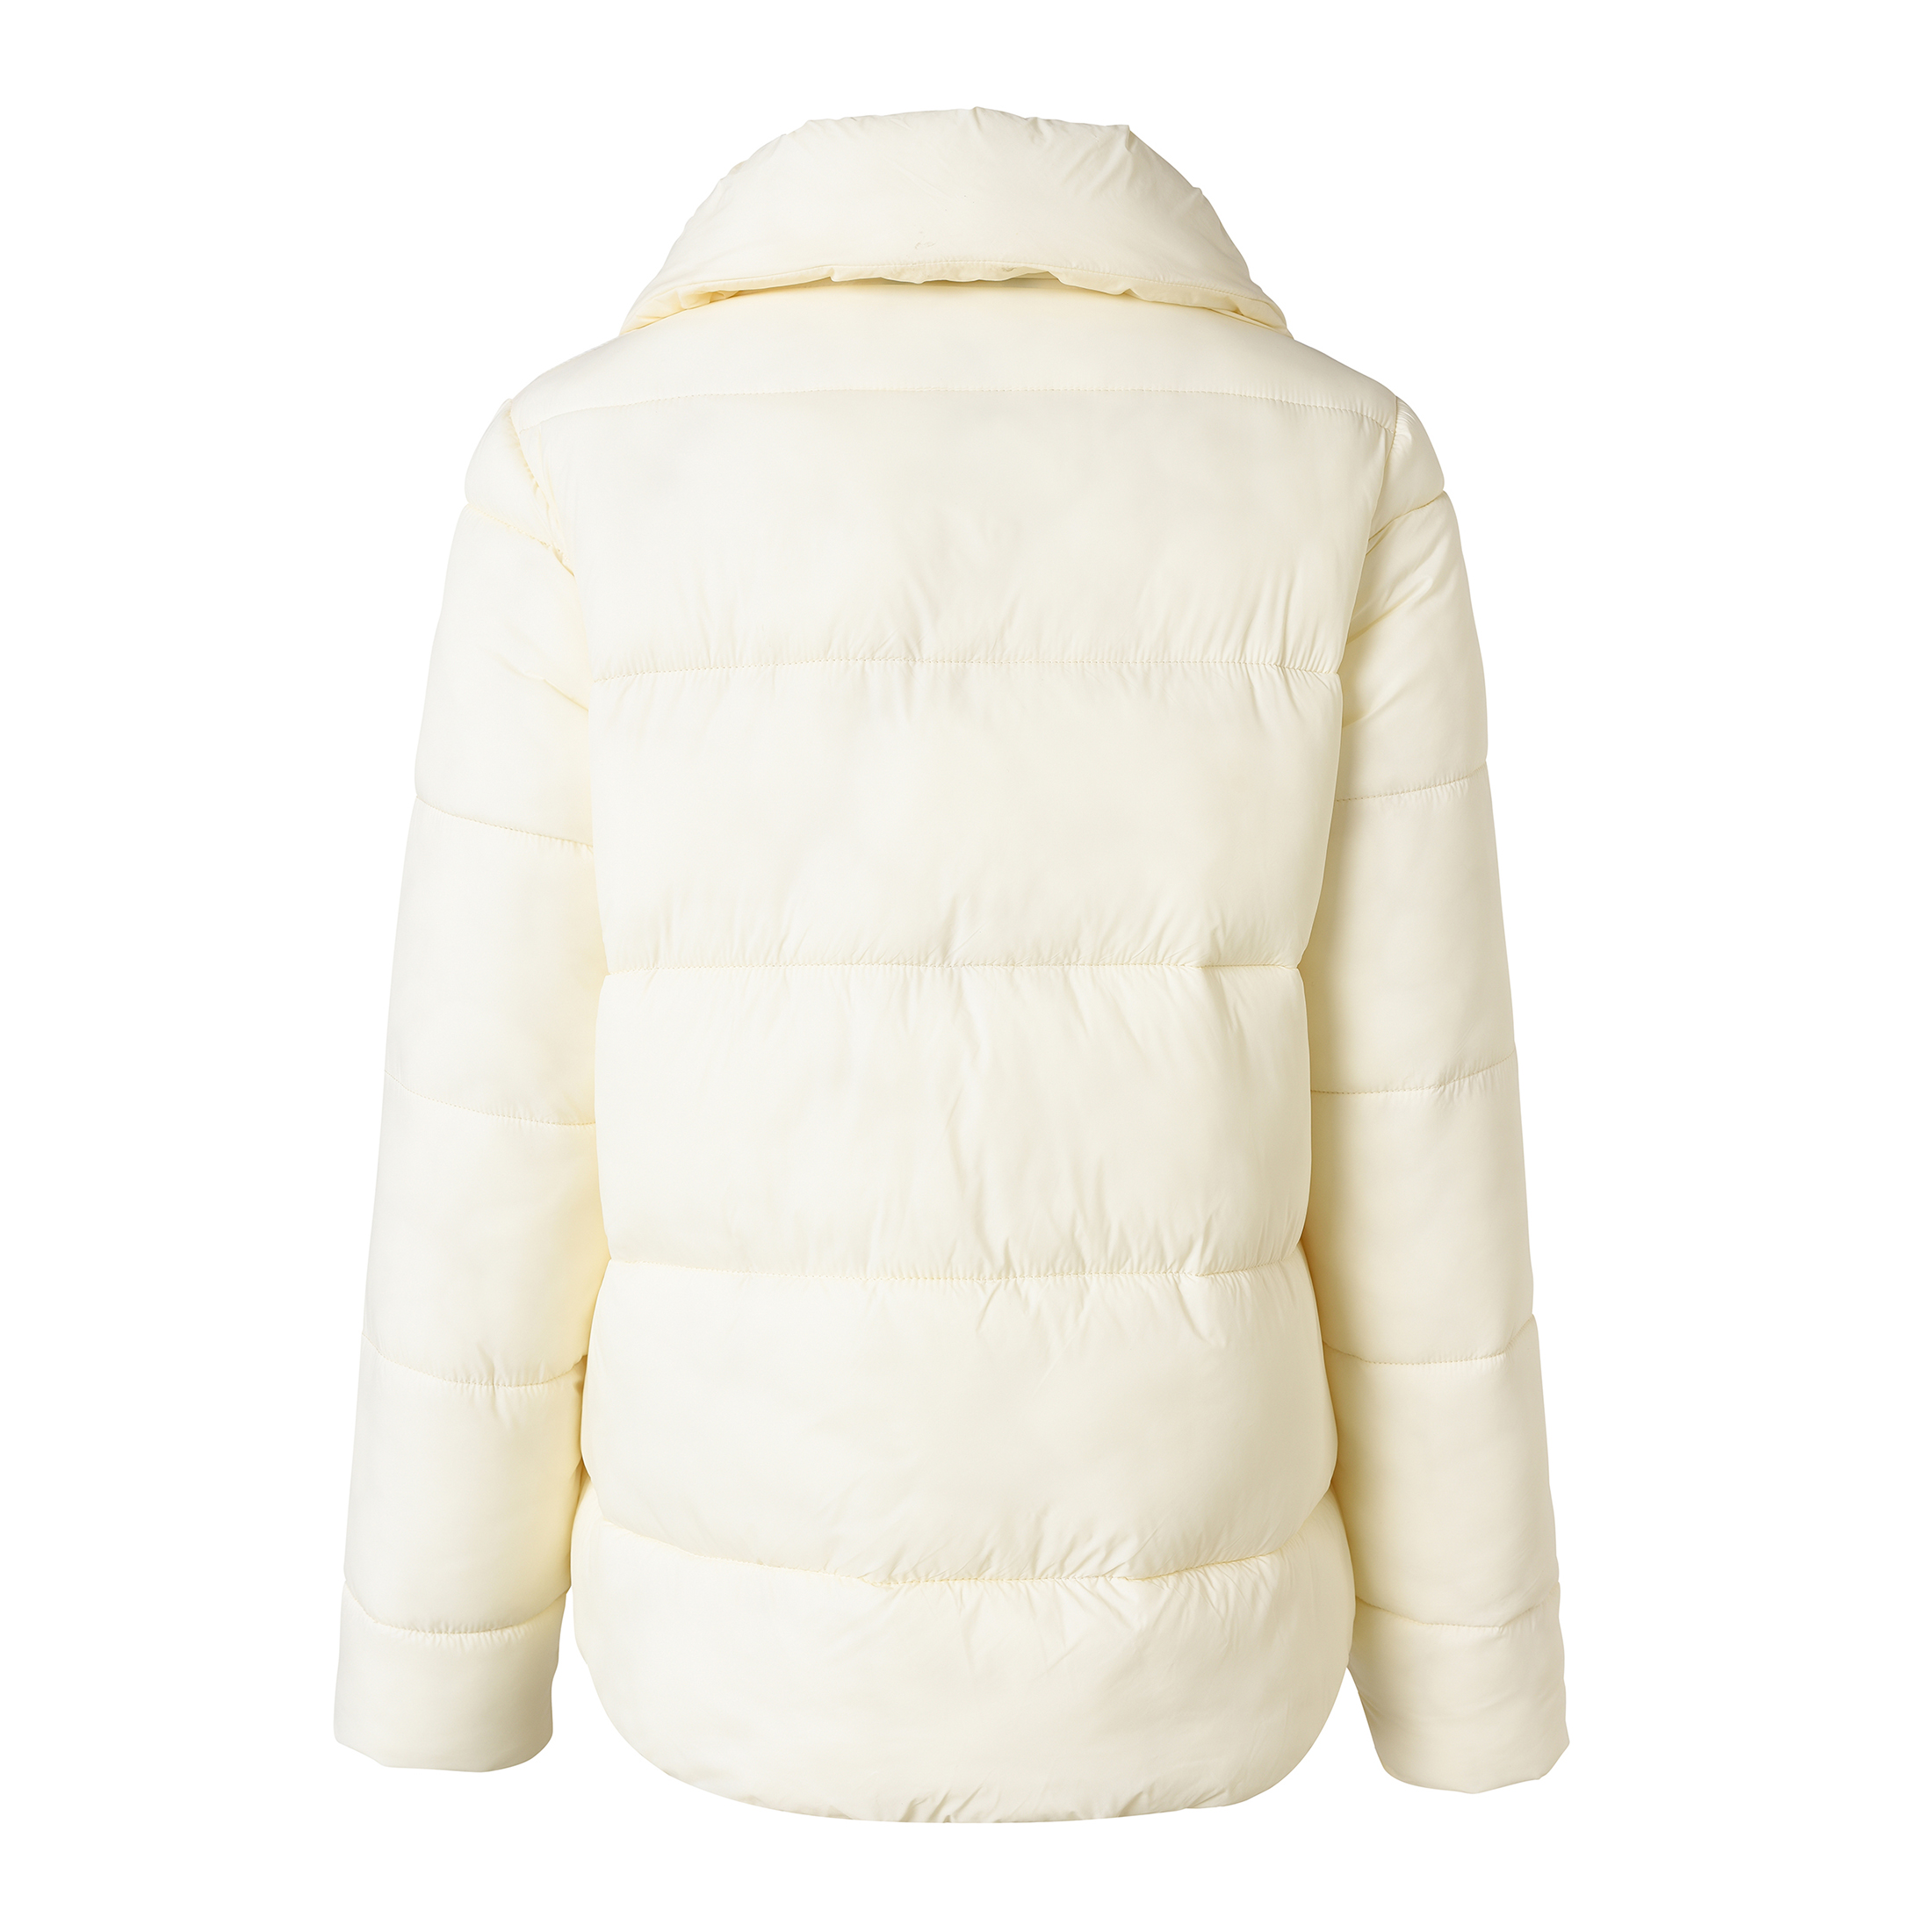 Fasion Winter Heavy Warm Casual Short Women\'s Puffer Jacket